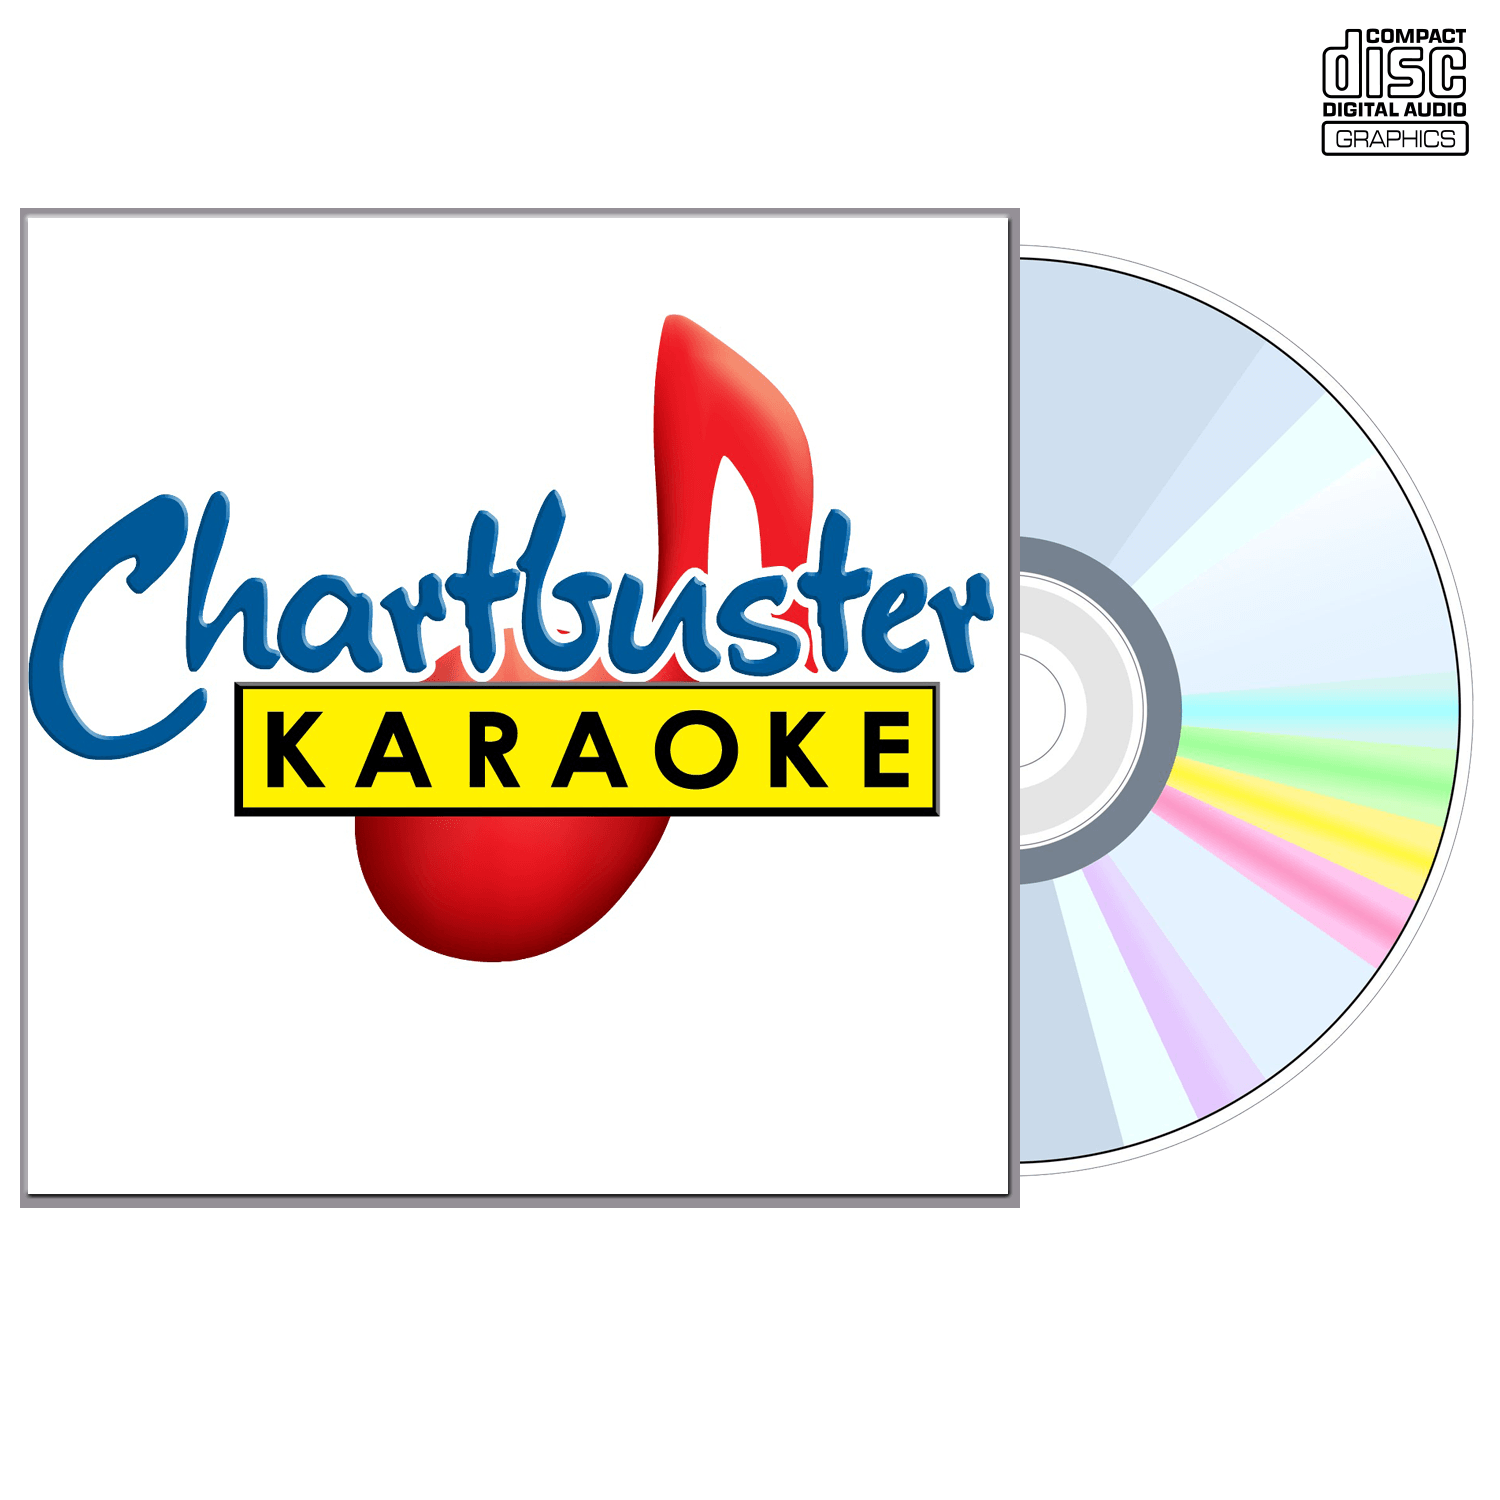 The Mavericks - CD+G - Chartbuster Karaoke - Karaoke Home Entertainment